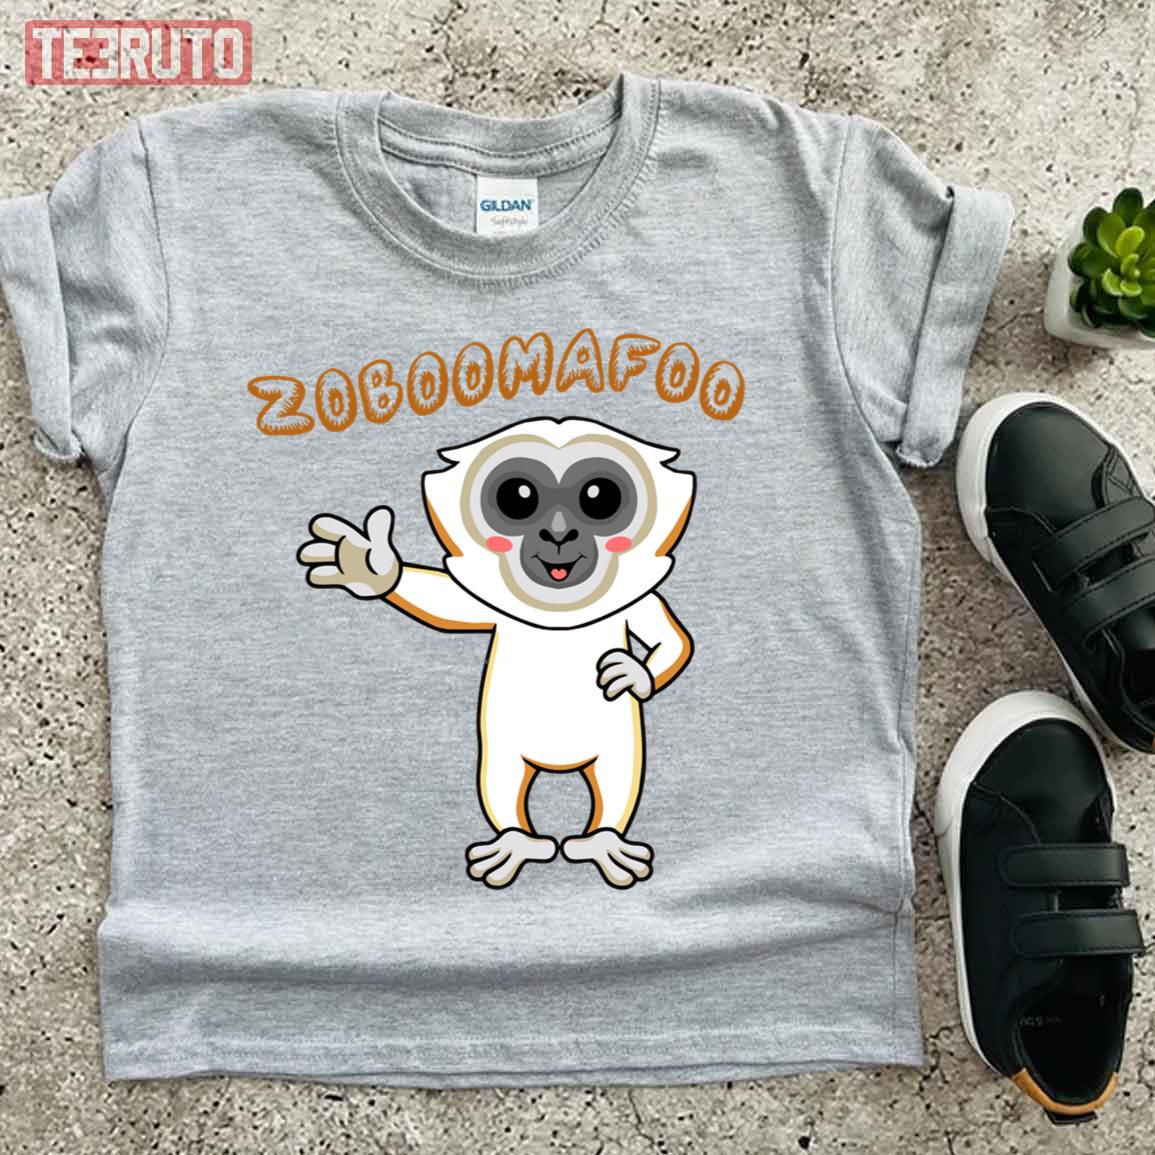 Zoboomafoo Funny Cartoon Unisex T-Shirt